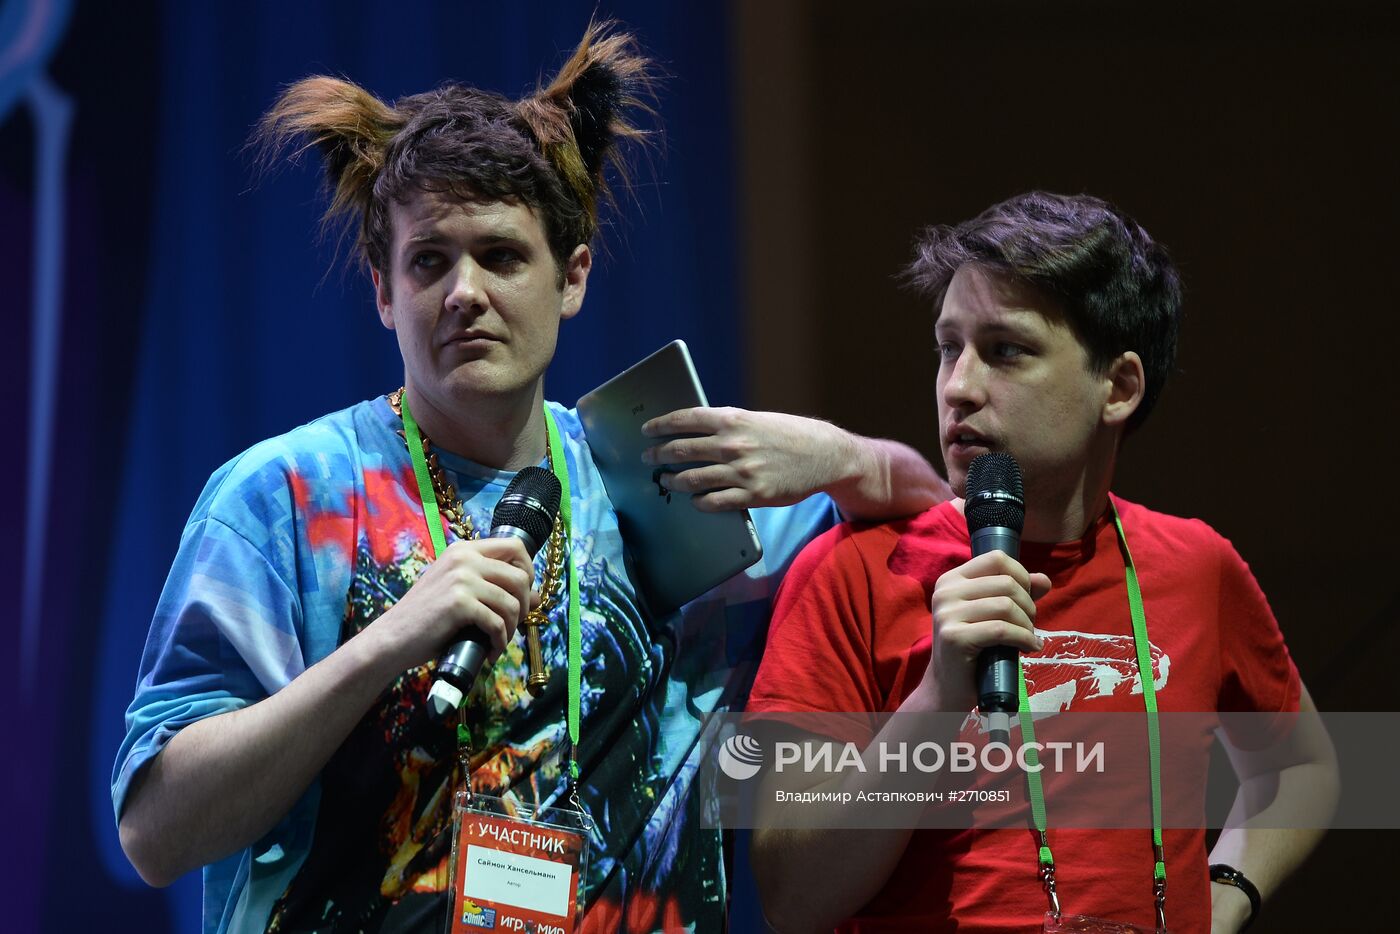 Выставка Comic Con Russia и "ИгроМир". День второй